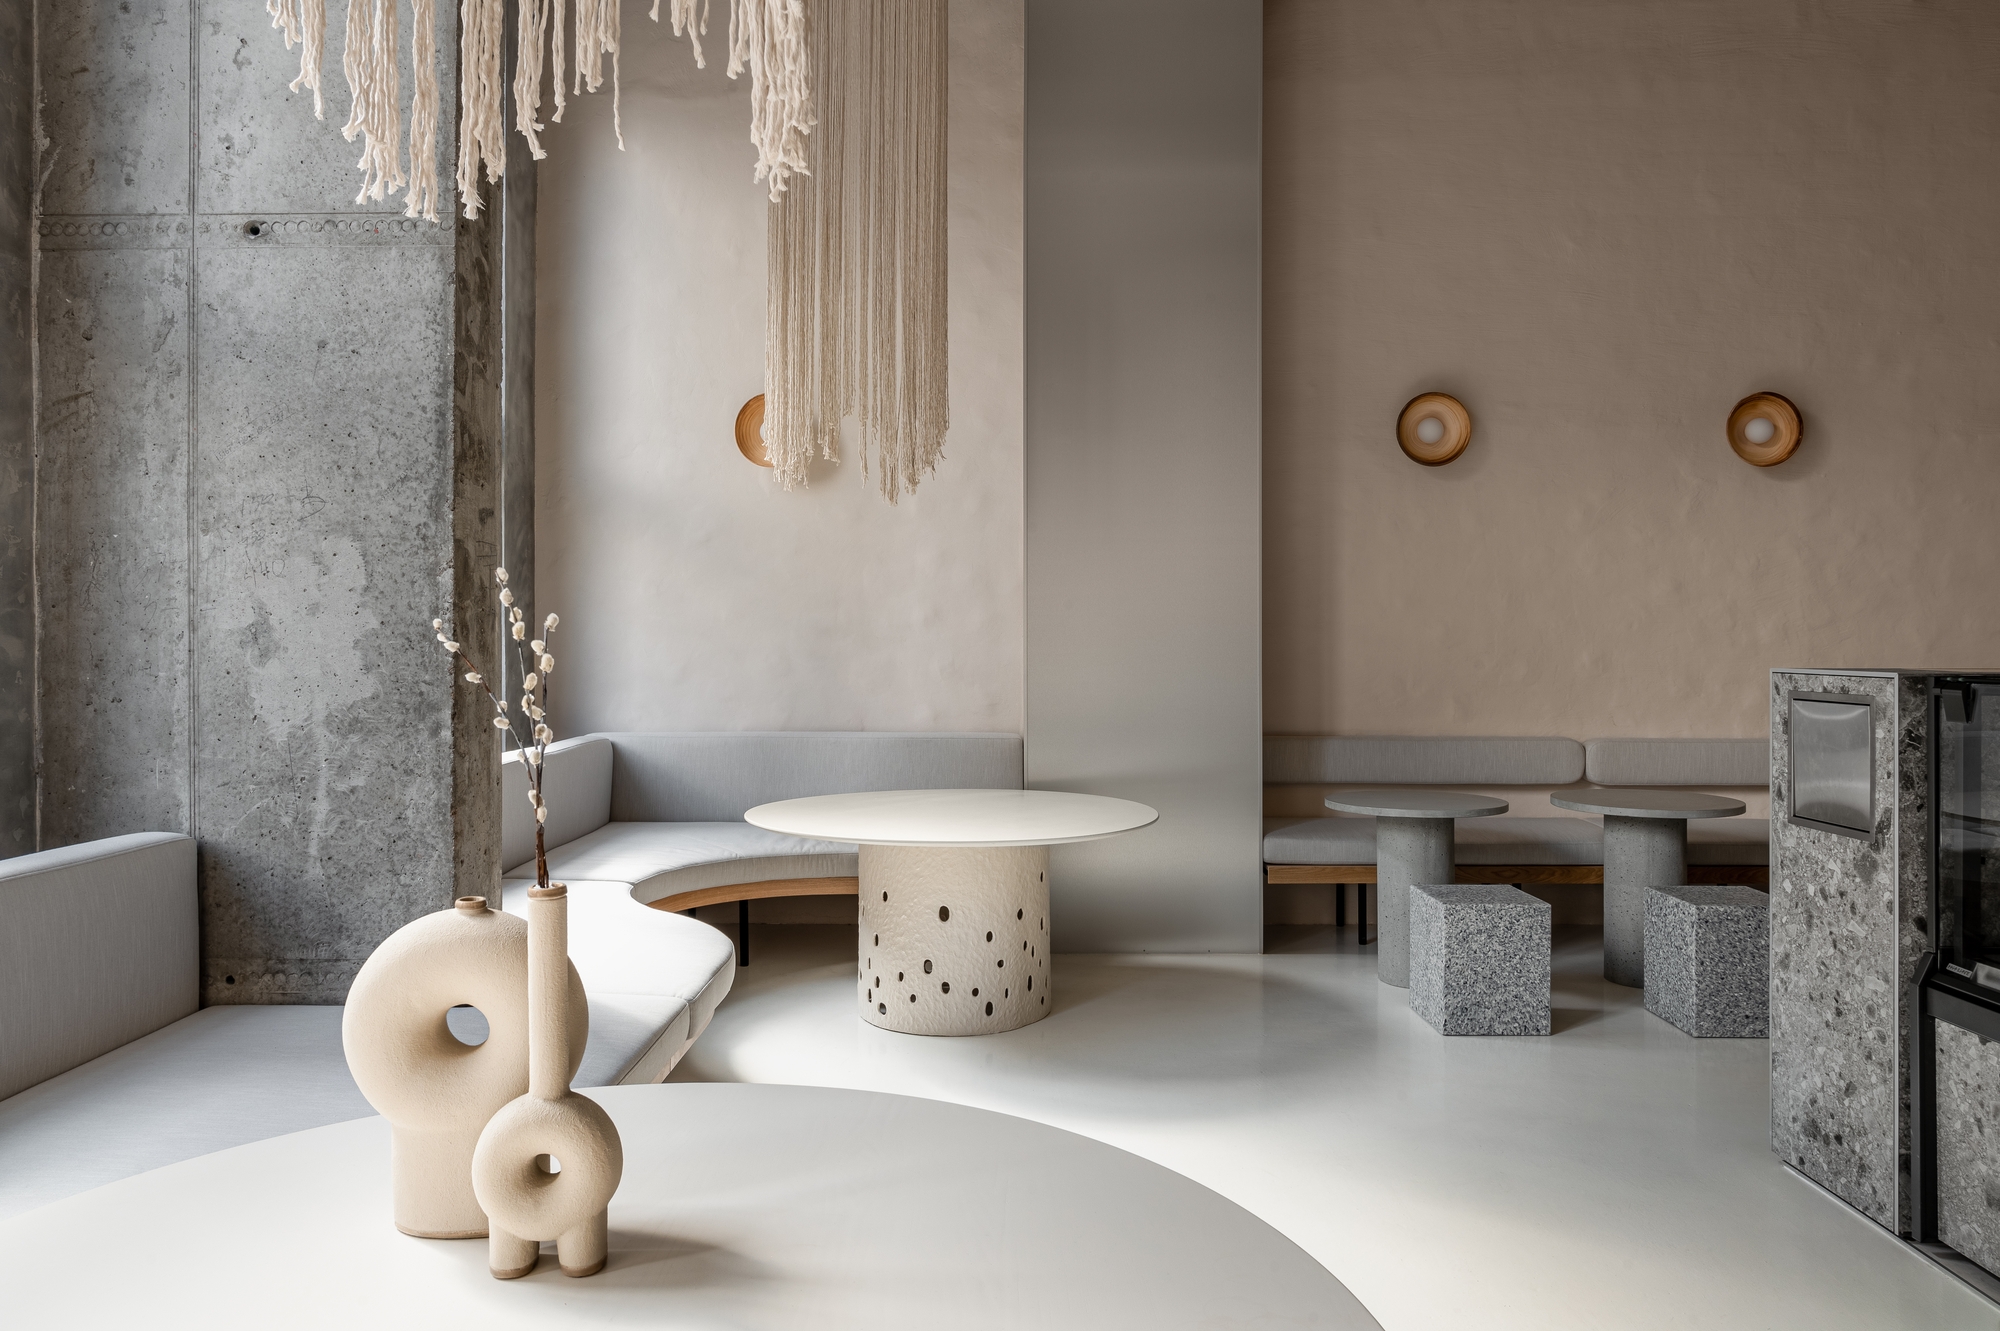 图片[3]|Istetyka咖啡馆|ART-Arrakis | 建筑室内设计的创新与灵感